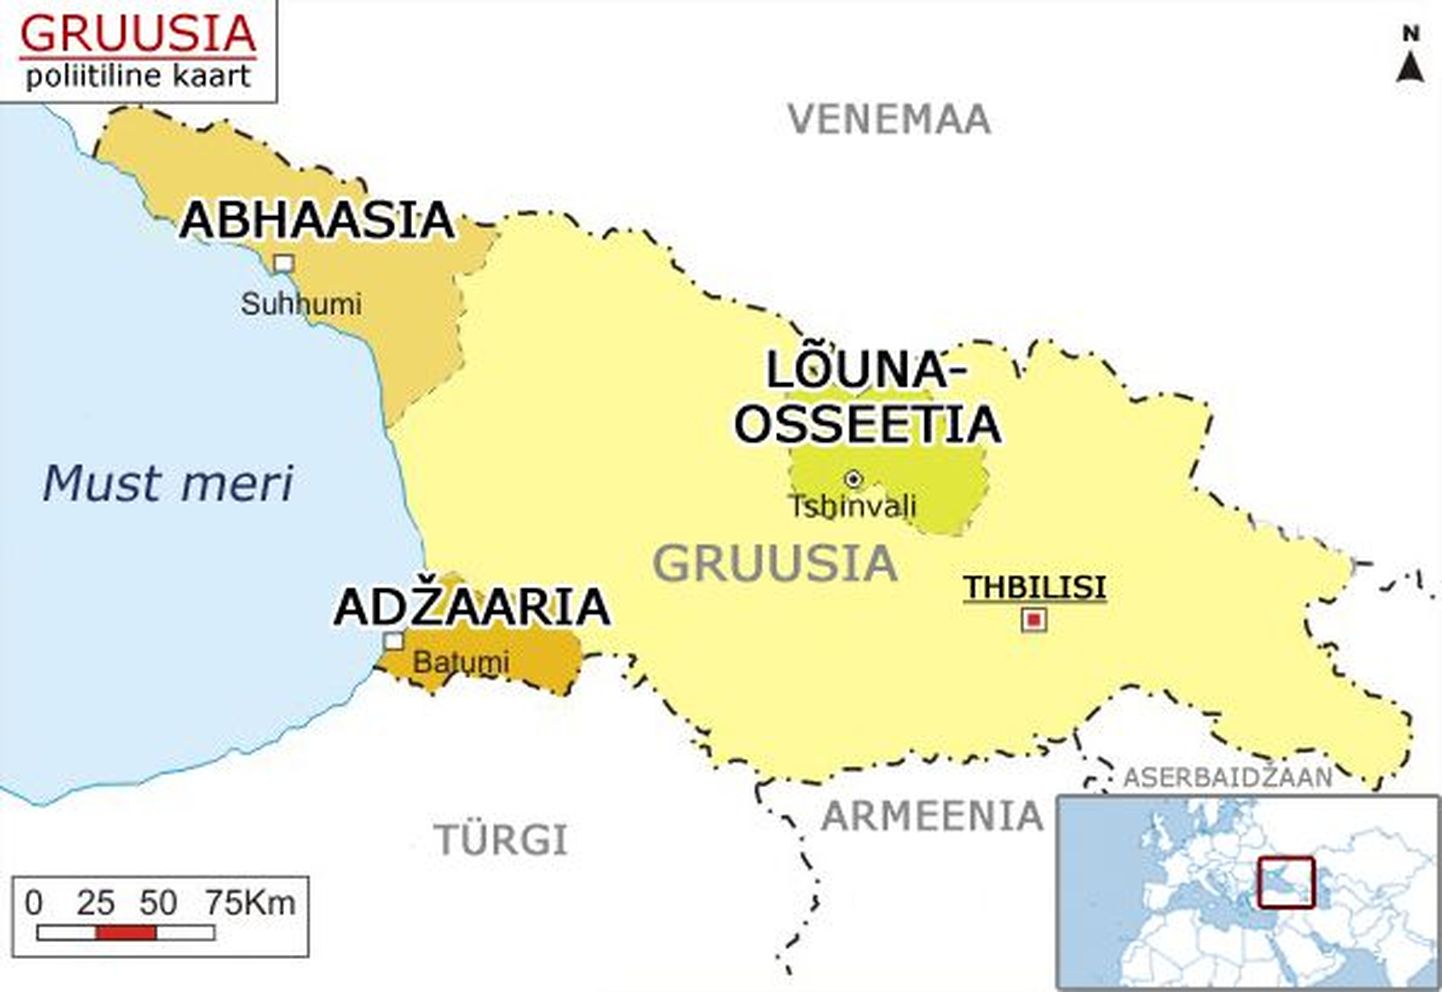 Gruusia konfliktitsoonid